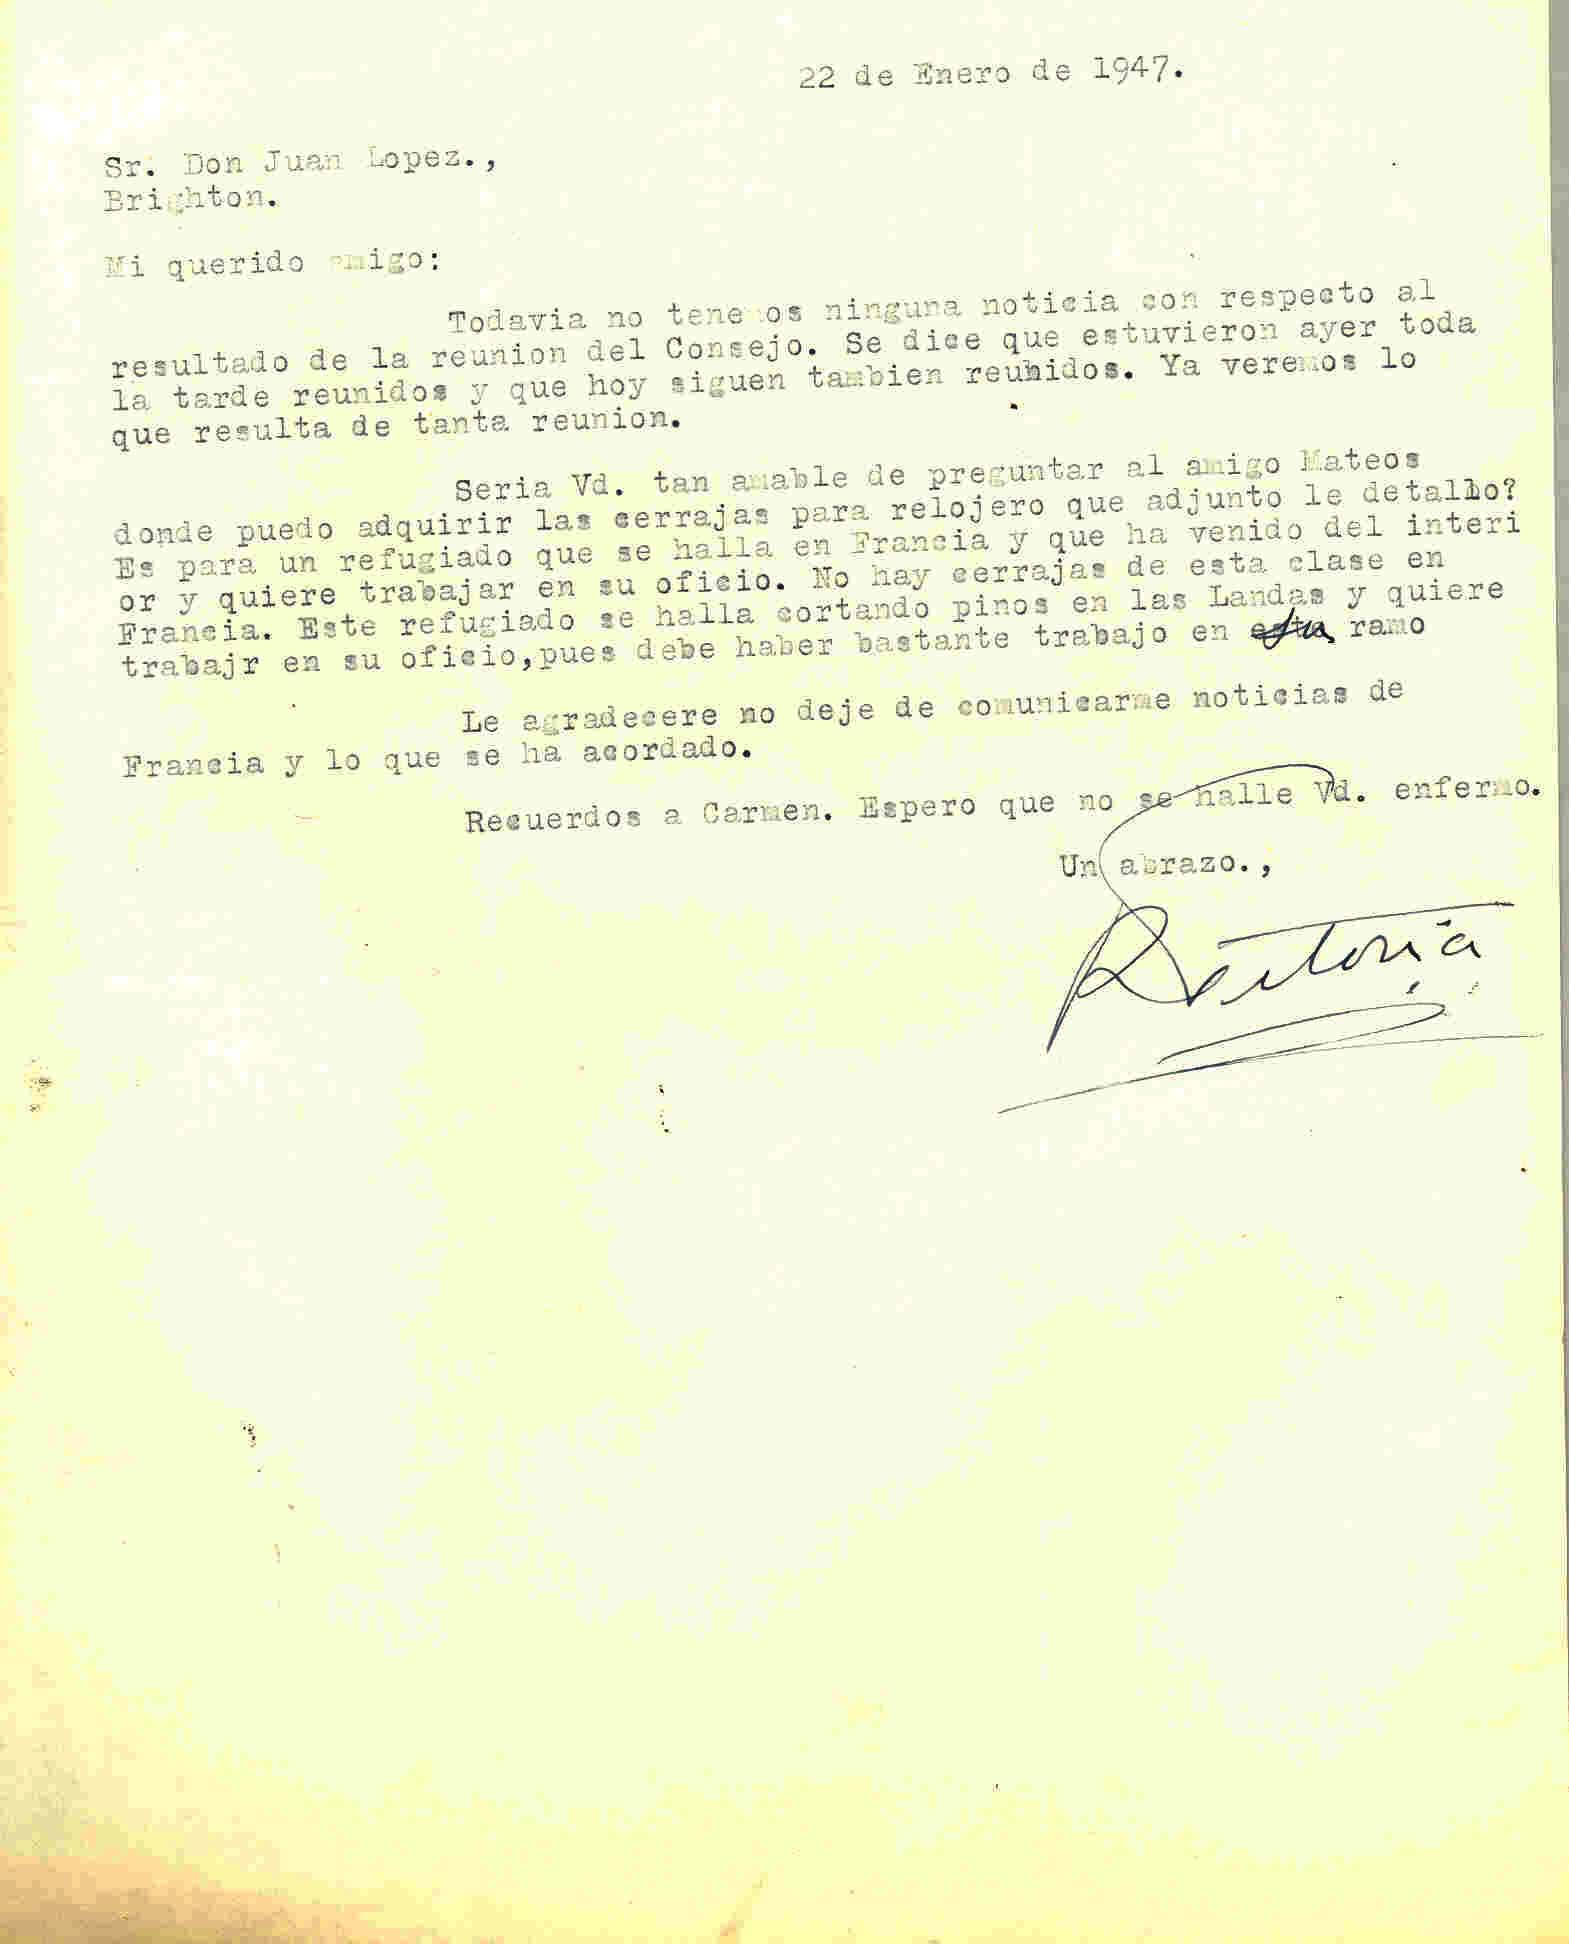 Carta de Roque Victoria en la que comunica que no hay noticias de la reunión del consejo de ministros.